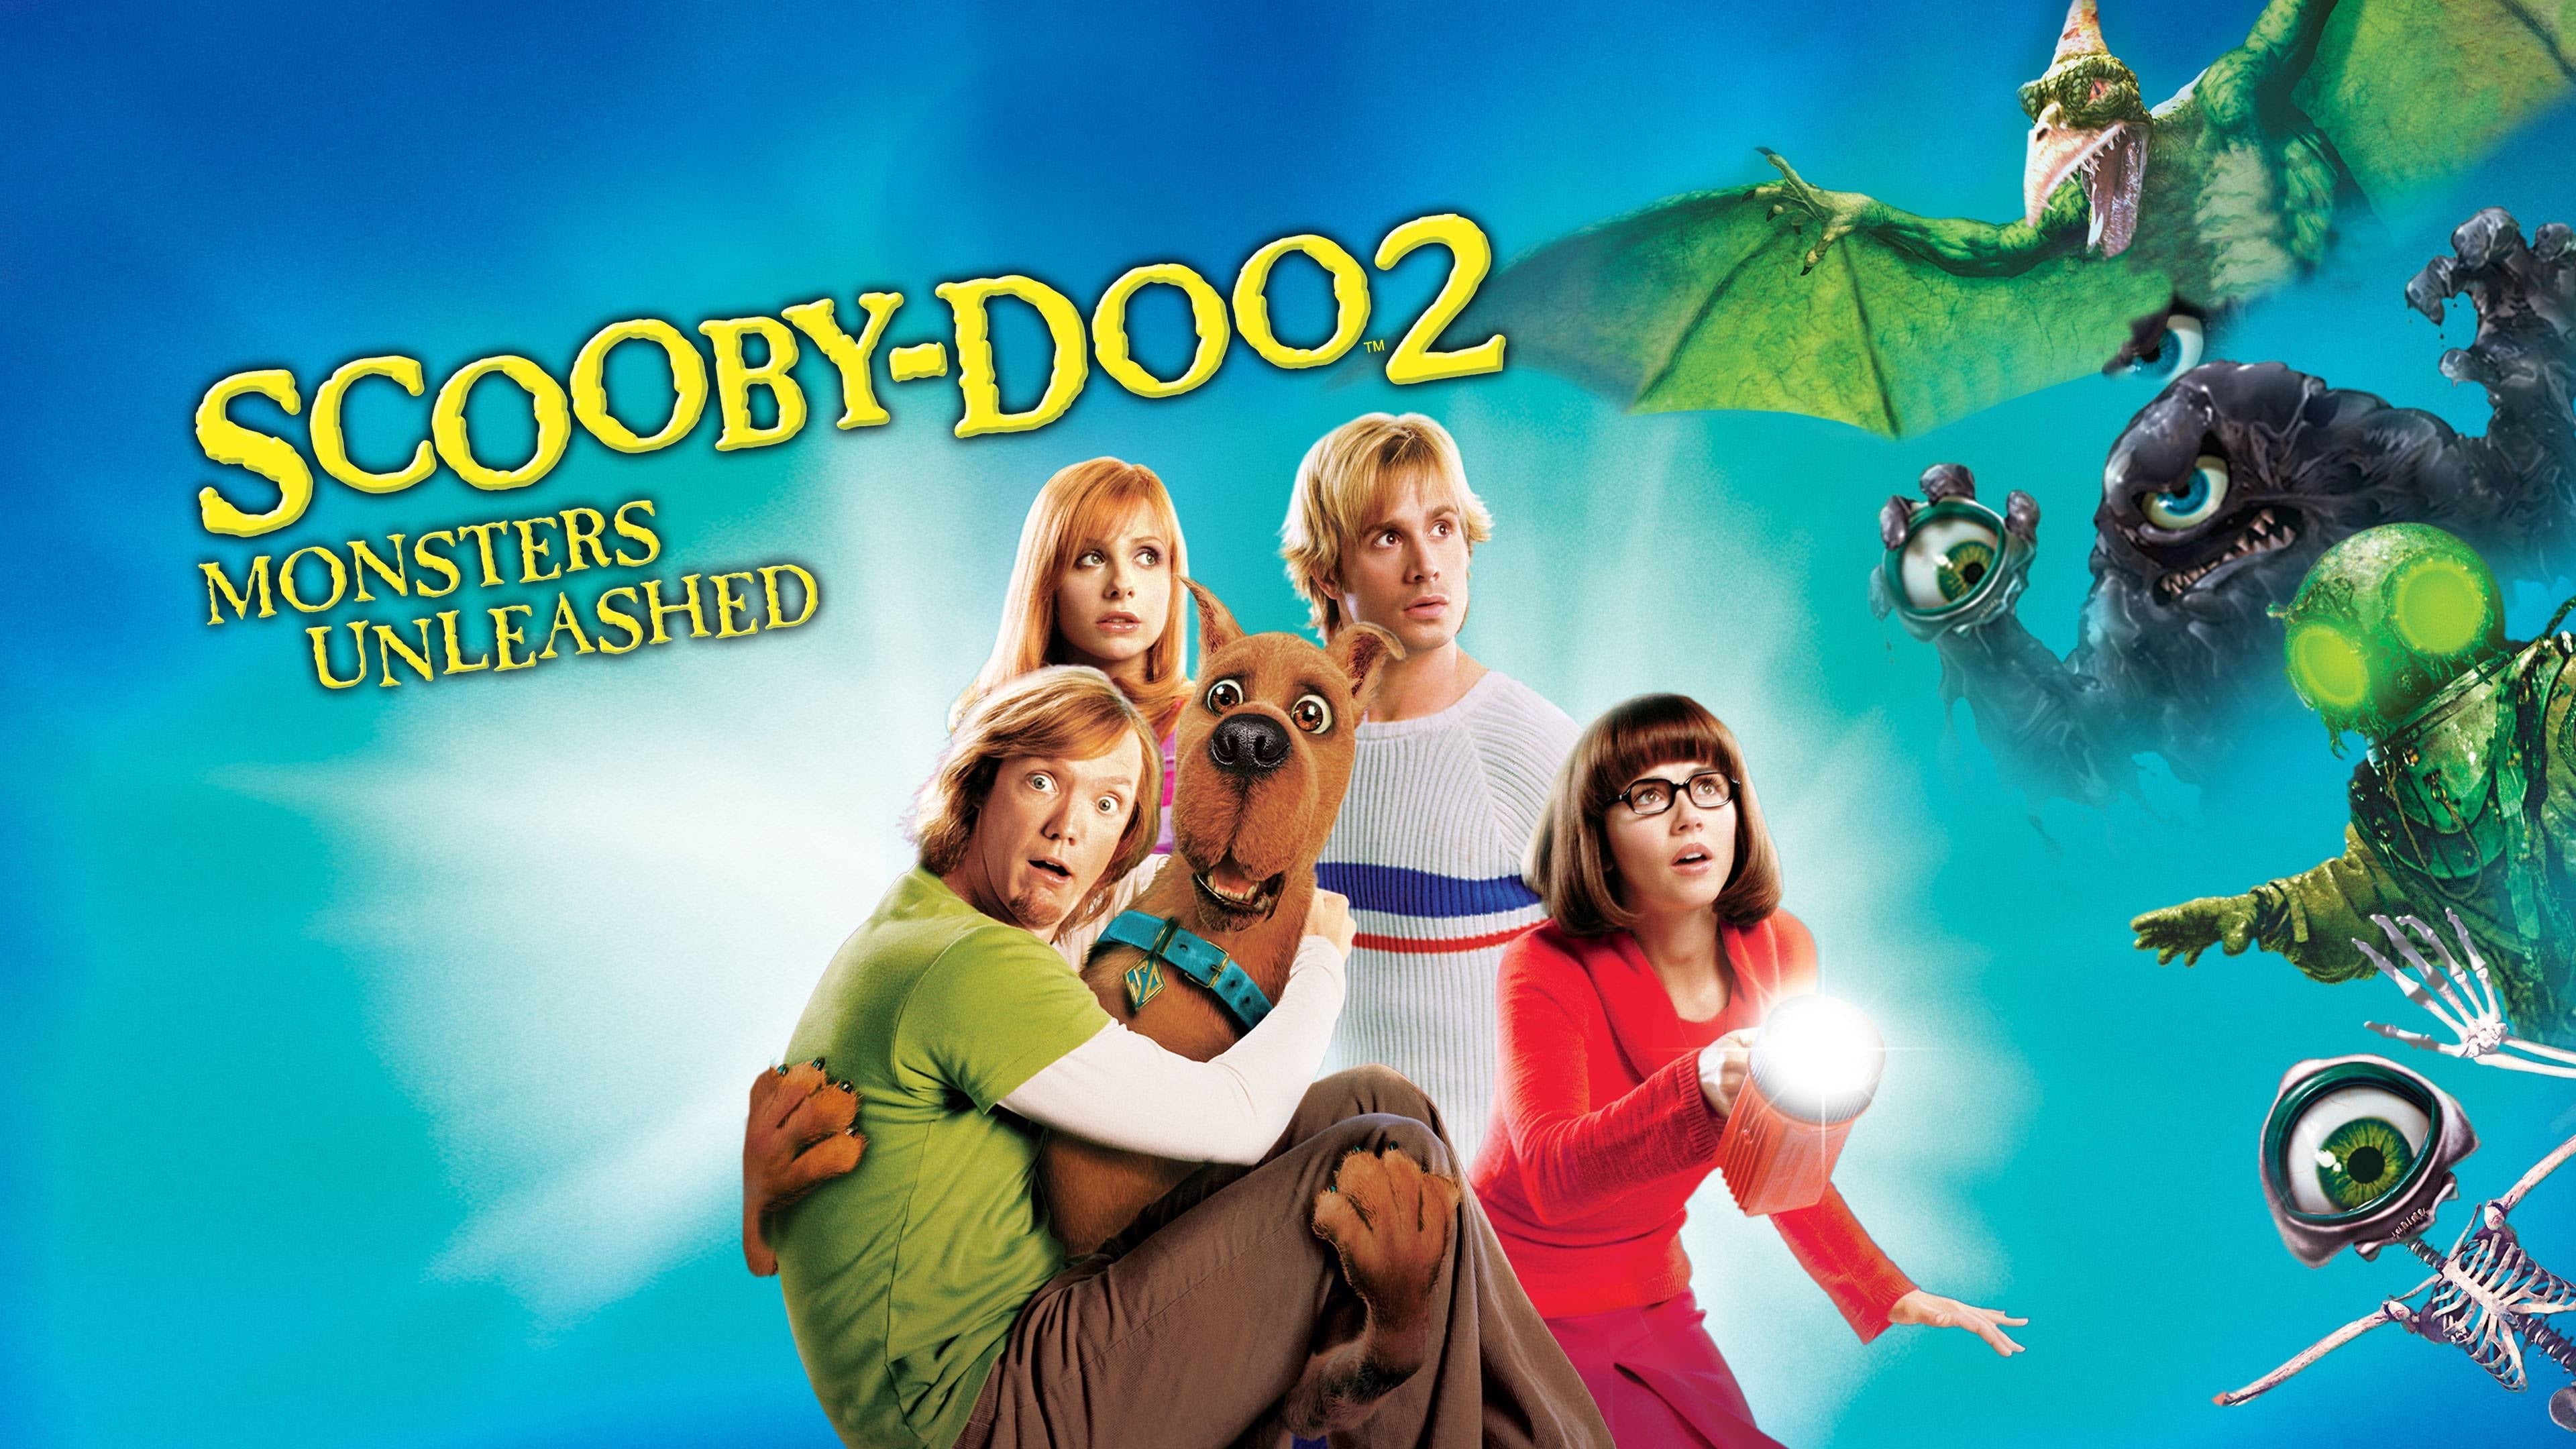 Scooby Doo 2: Monsters Unleashed 4k Ultra HD Wallpaper